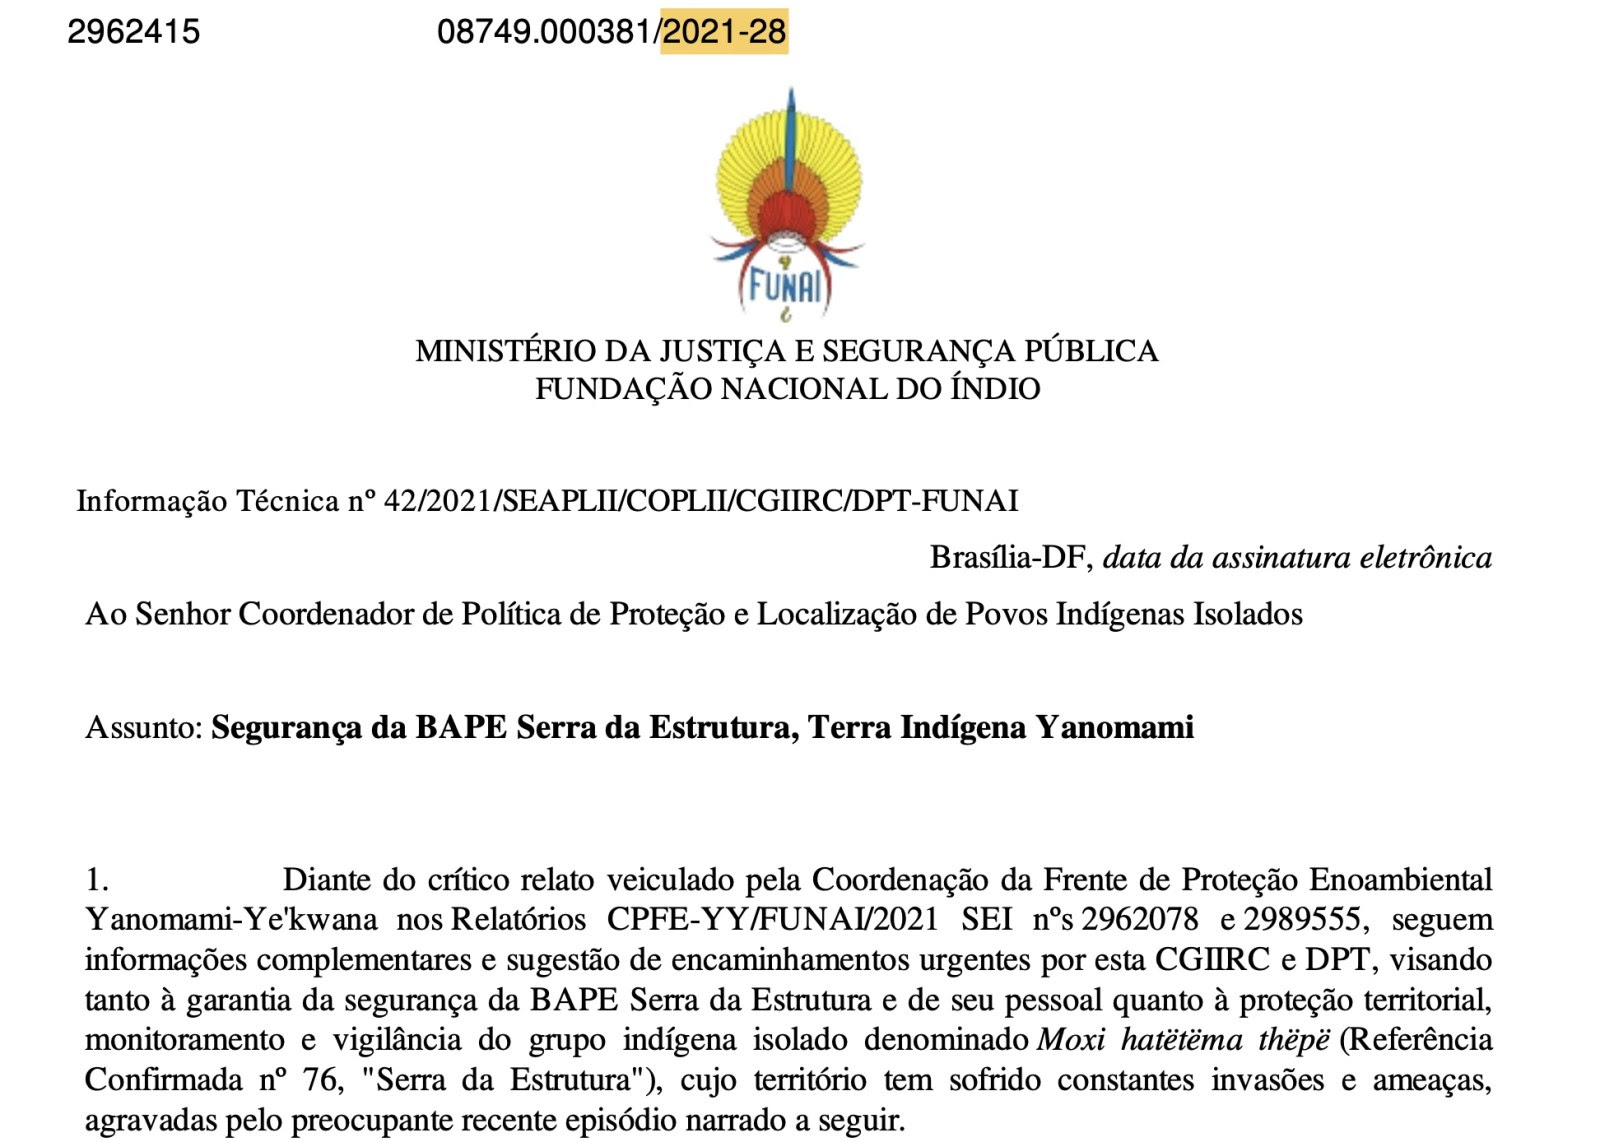 Reprodução de documento oficial da Funai que denuncia presença do garimpo no território indígena yanomami